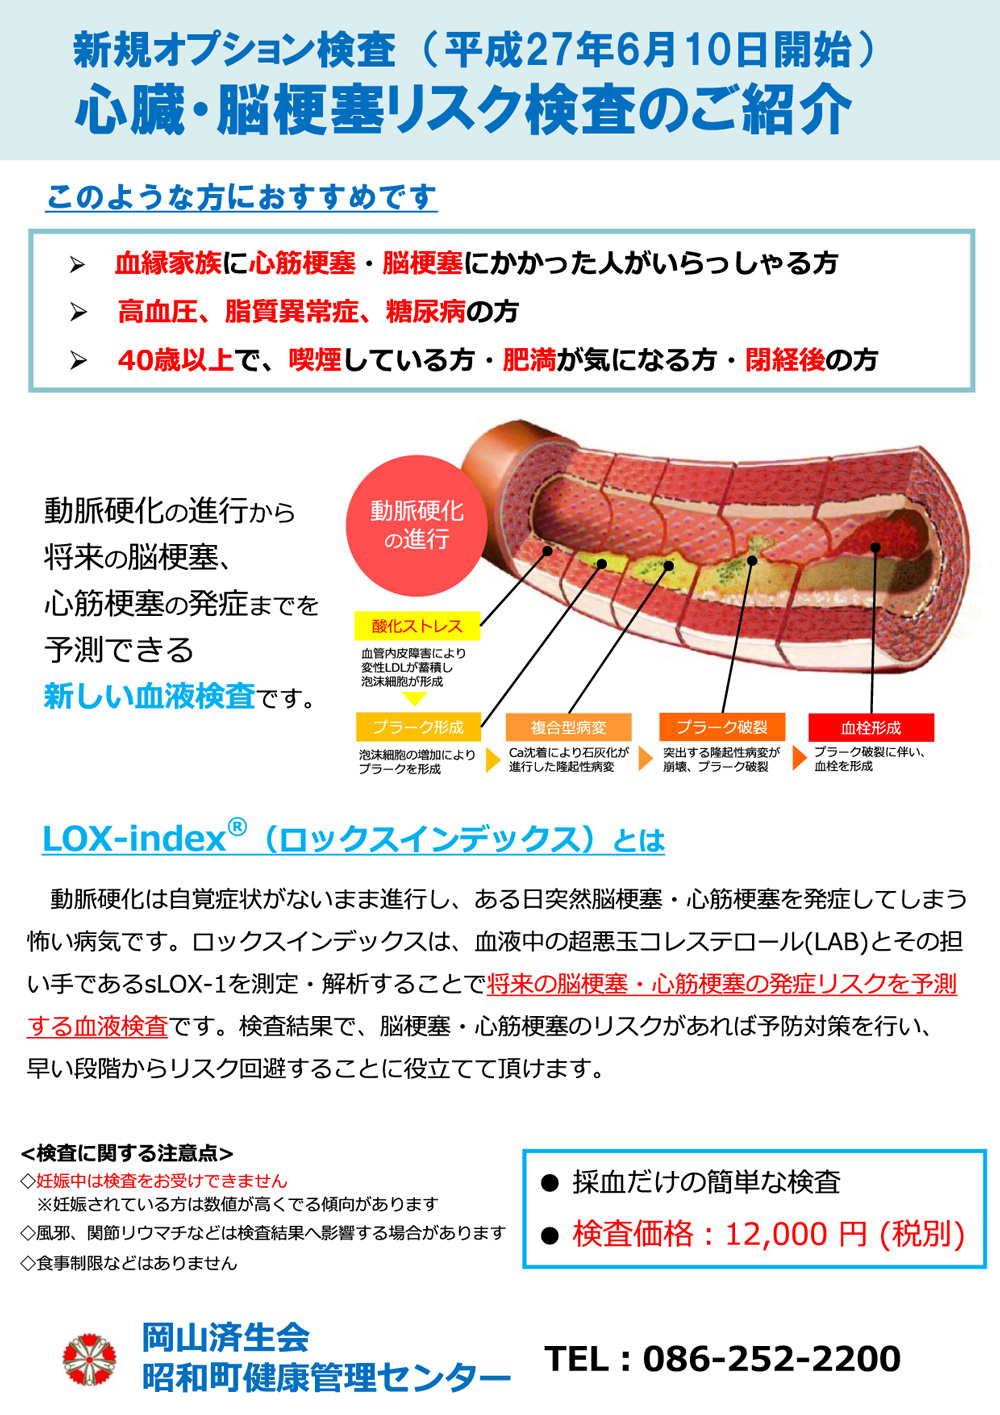 lox-index1